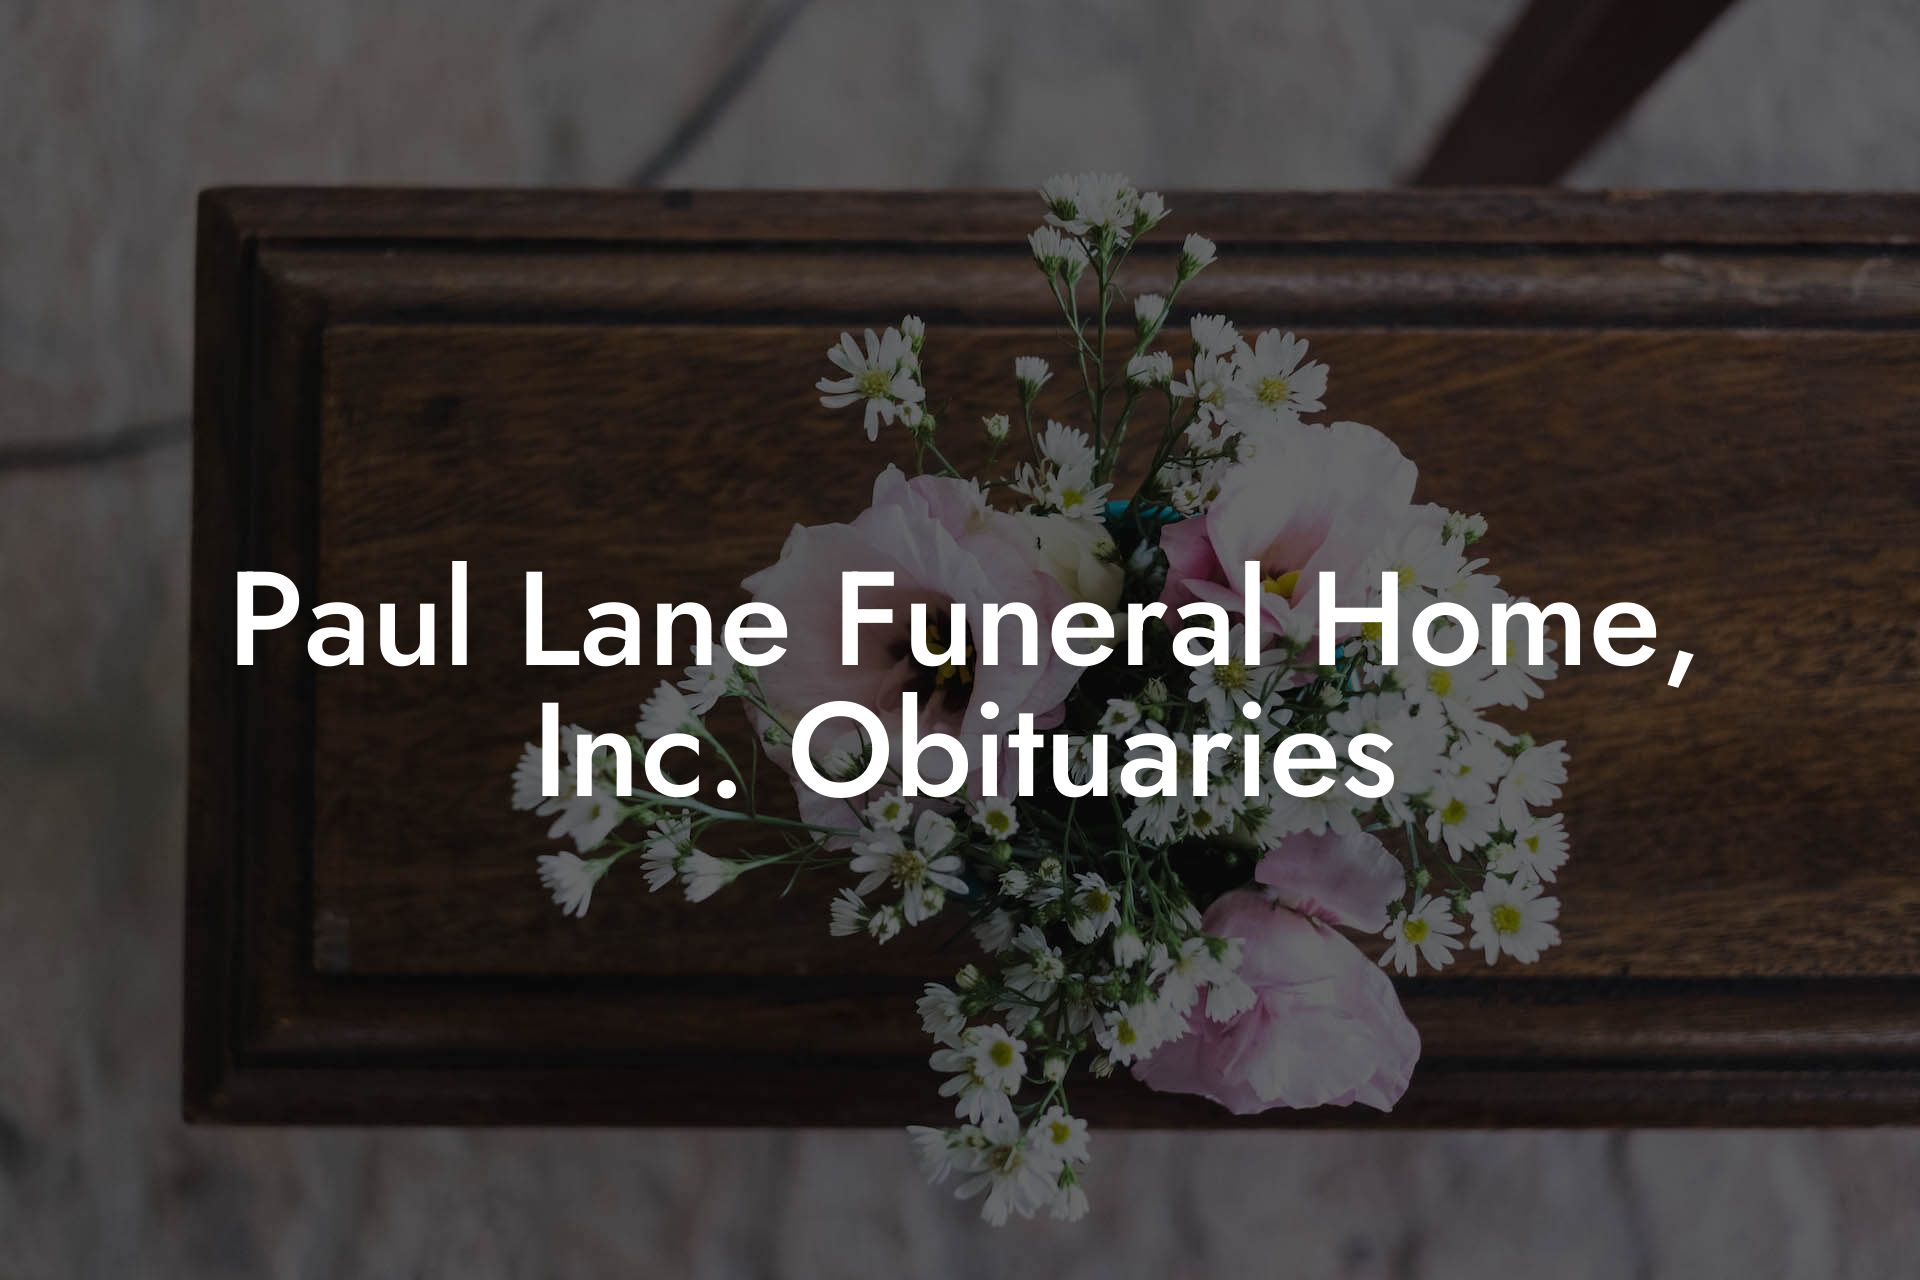 Paul Lane Funeral Home, Inc. Obituaries